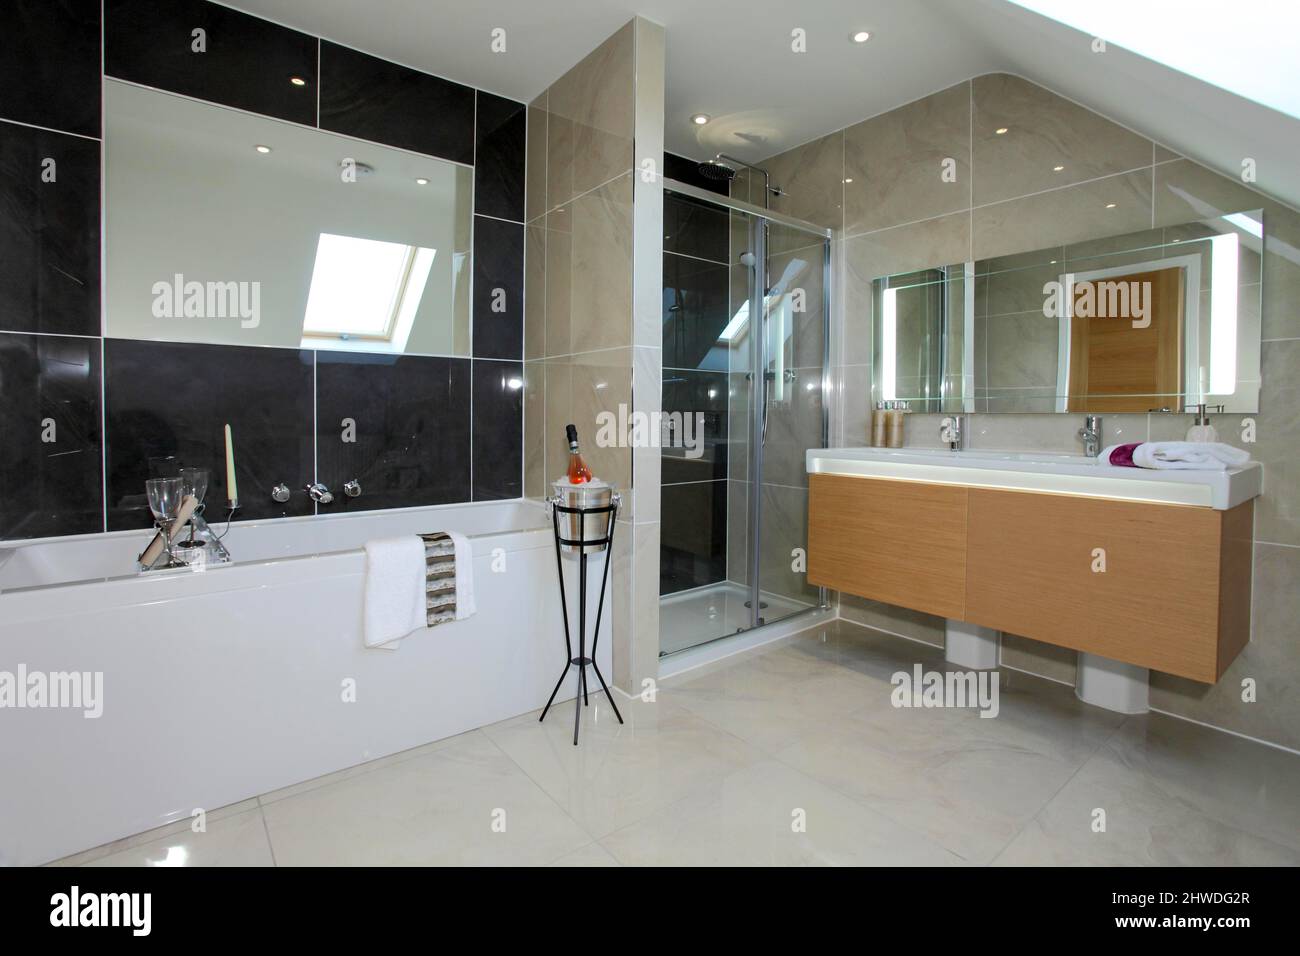 Badezimmer mit Waschbecken für Sie und ihn, Dusche und Champagner auf einem Ständer neben der Badewanne. Stockfoto